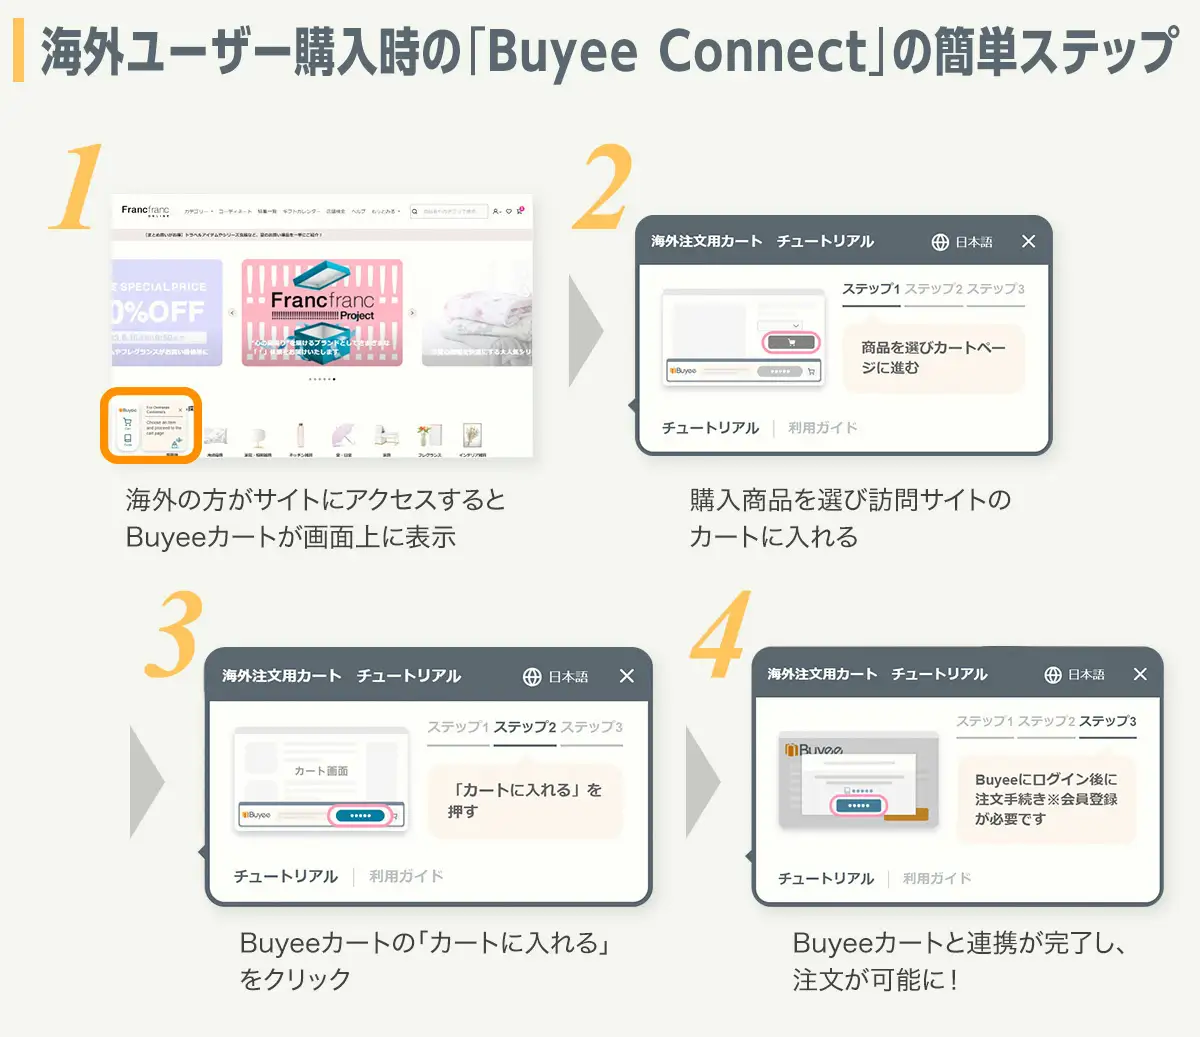 Buyee Connectを通じた海外ユーザーの購入ステップ